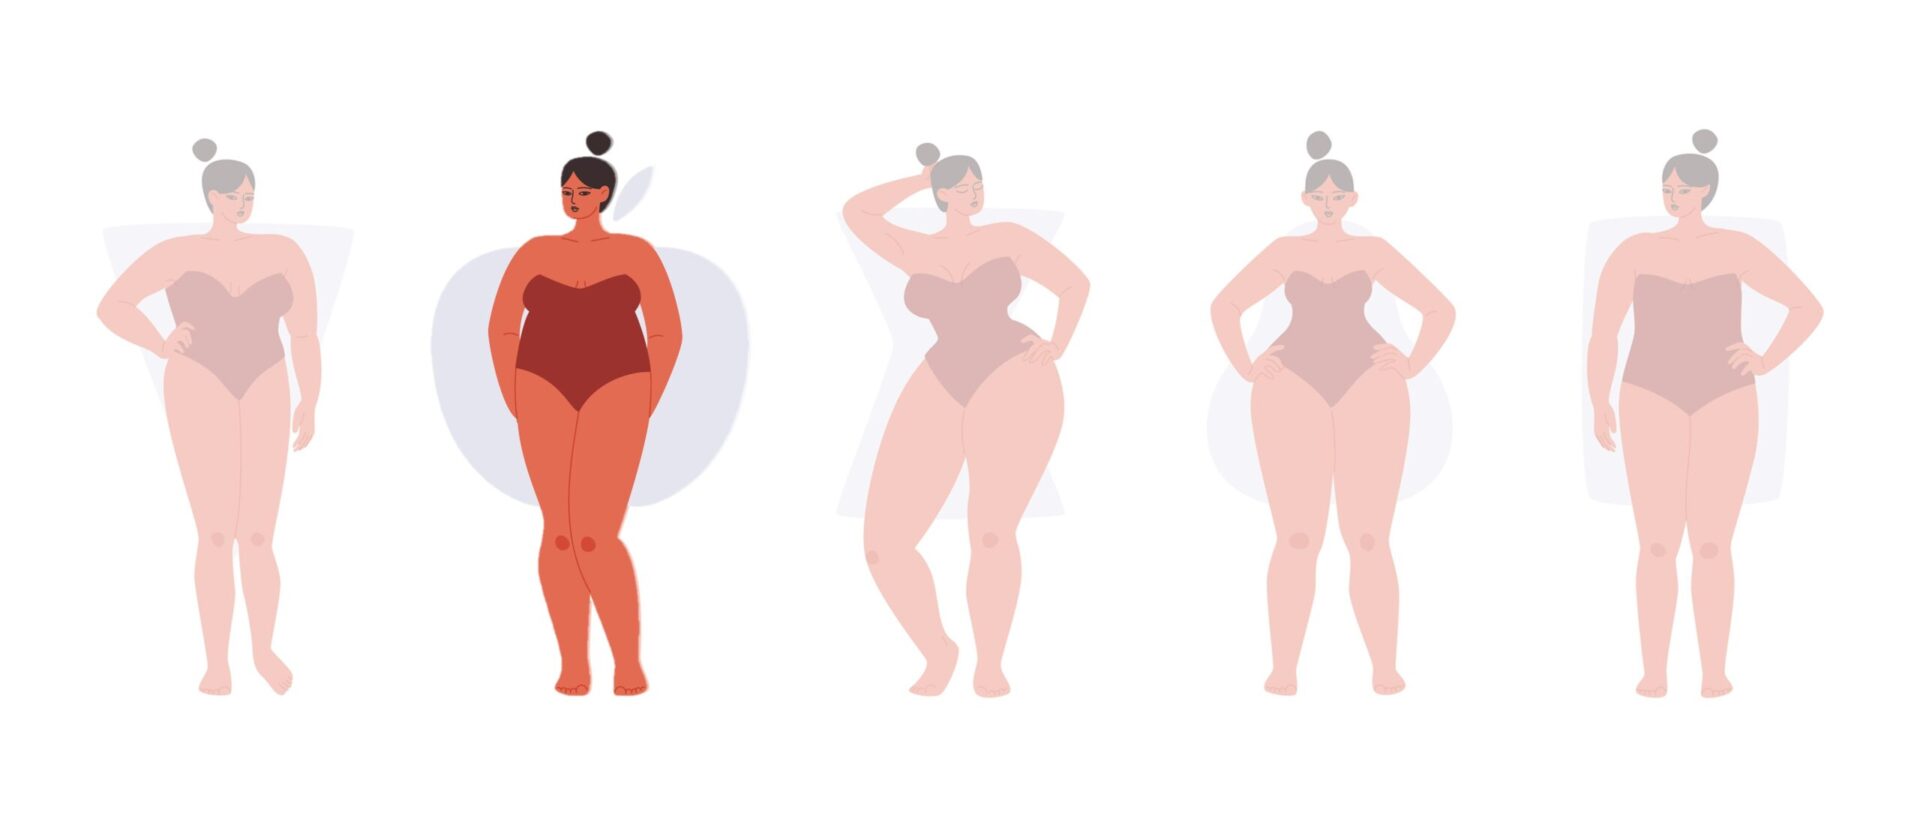 Existem 5 tipos básicos de corpo  Body shapes, Body shape guide, Apple  body shapes